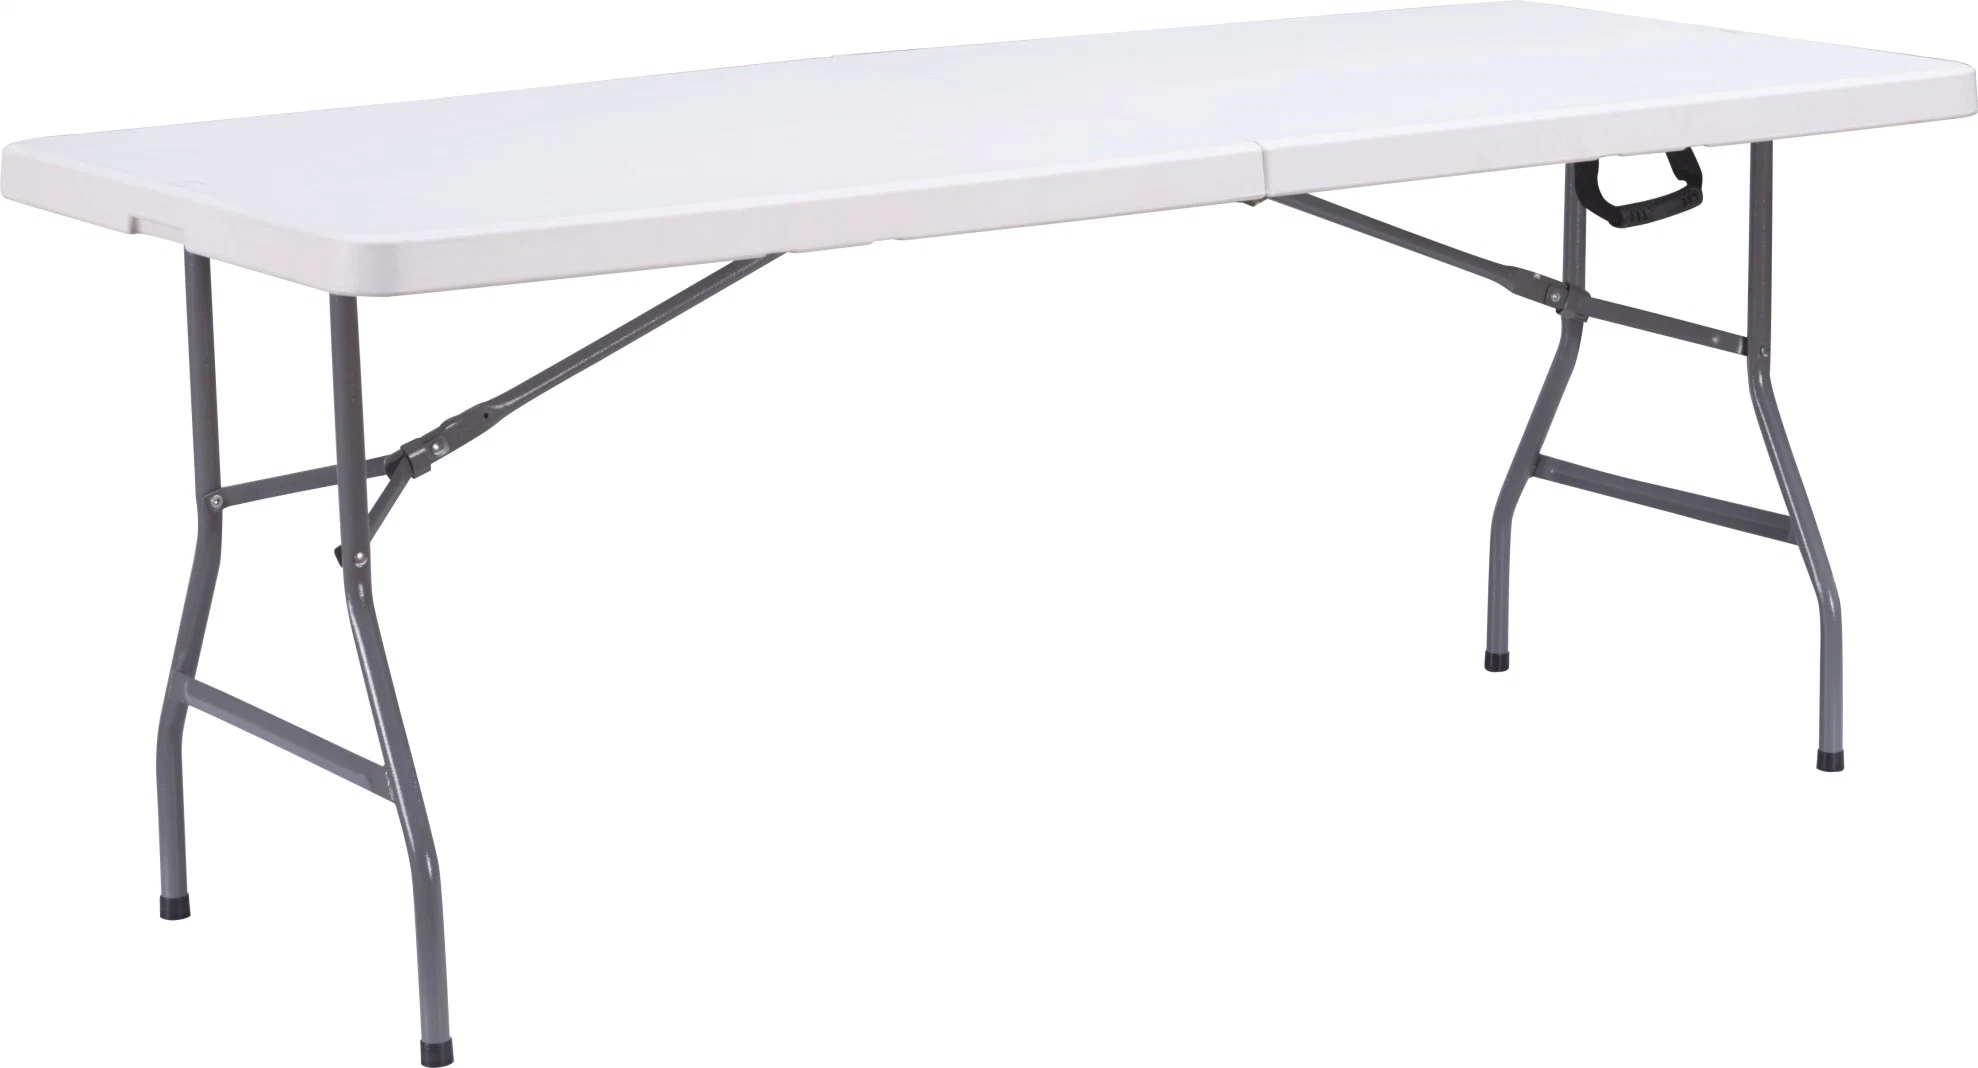 72pulgadas plegable de plástico al aire libre en la mitad de tabla/6pies de longitud PE Mesa con patas de acero inoxidable de 1,8 m/mesa plegable